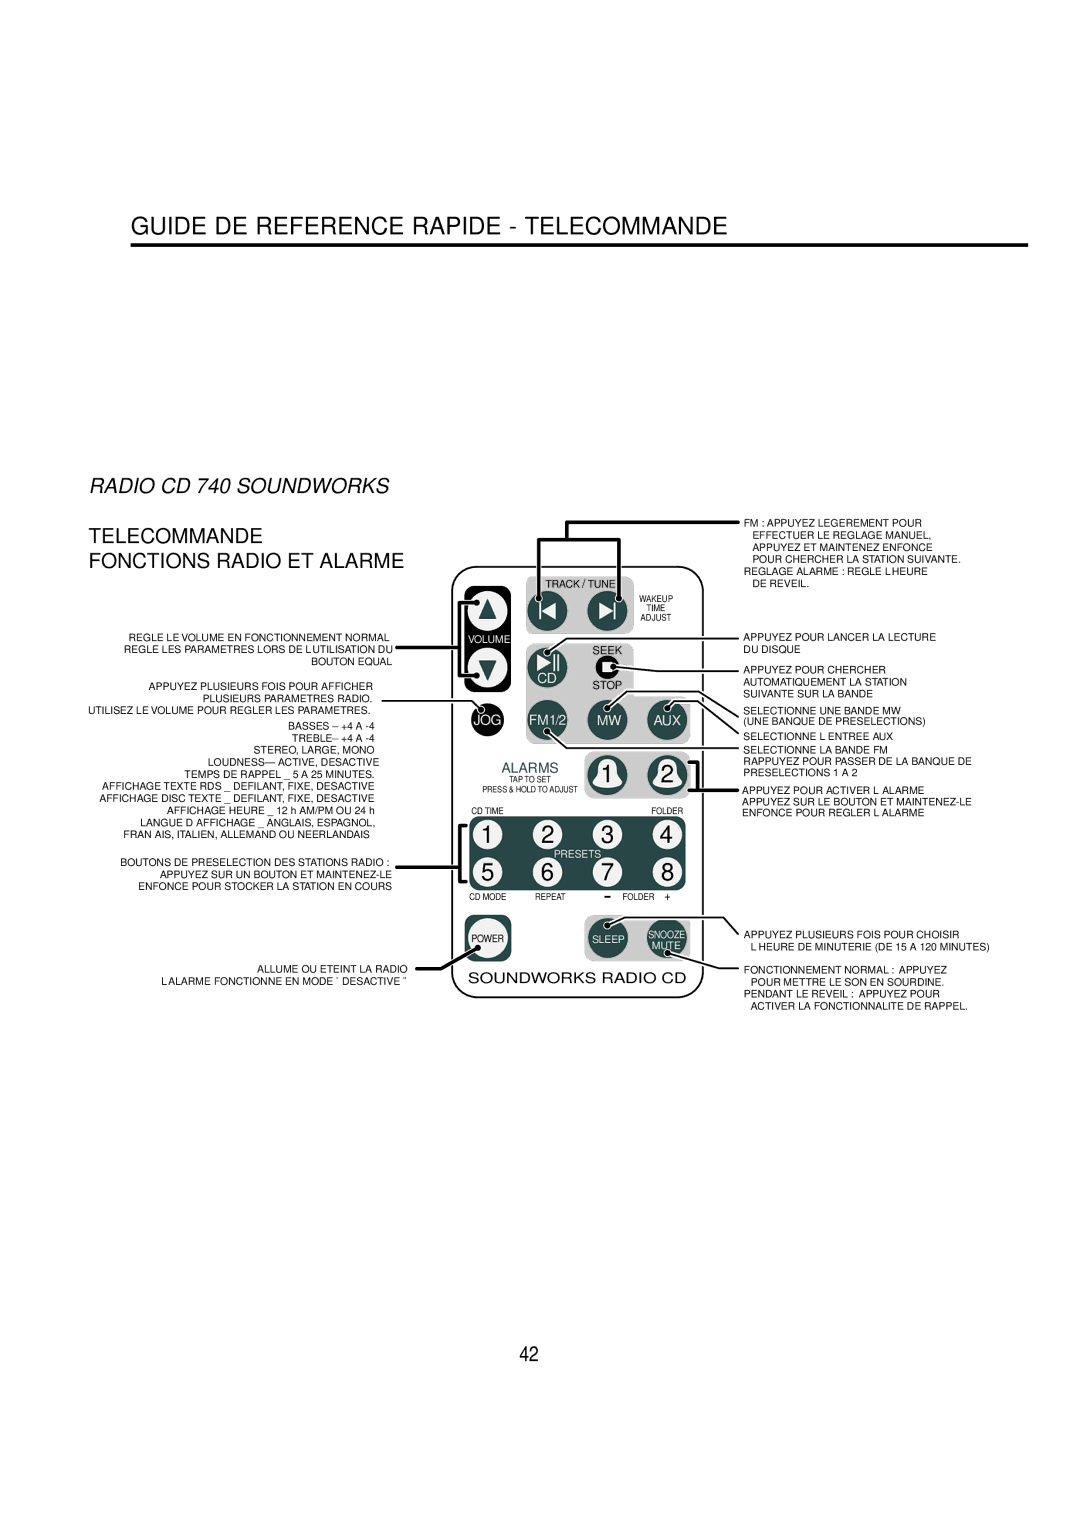 Cambridge SoundWorks C174RCNB user manual Guide DE Reference Rapide Telecommande, Regle LE Volume EN Fonctionnement Normal 